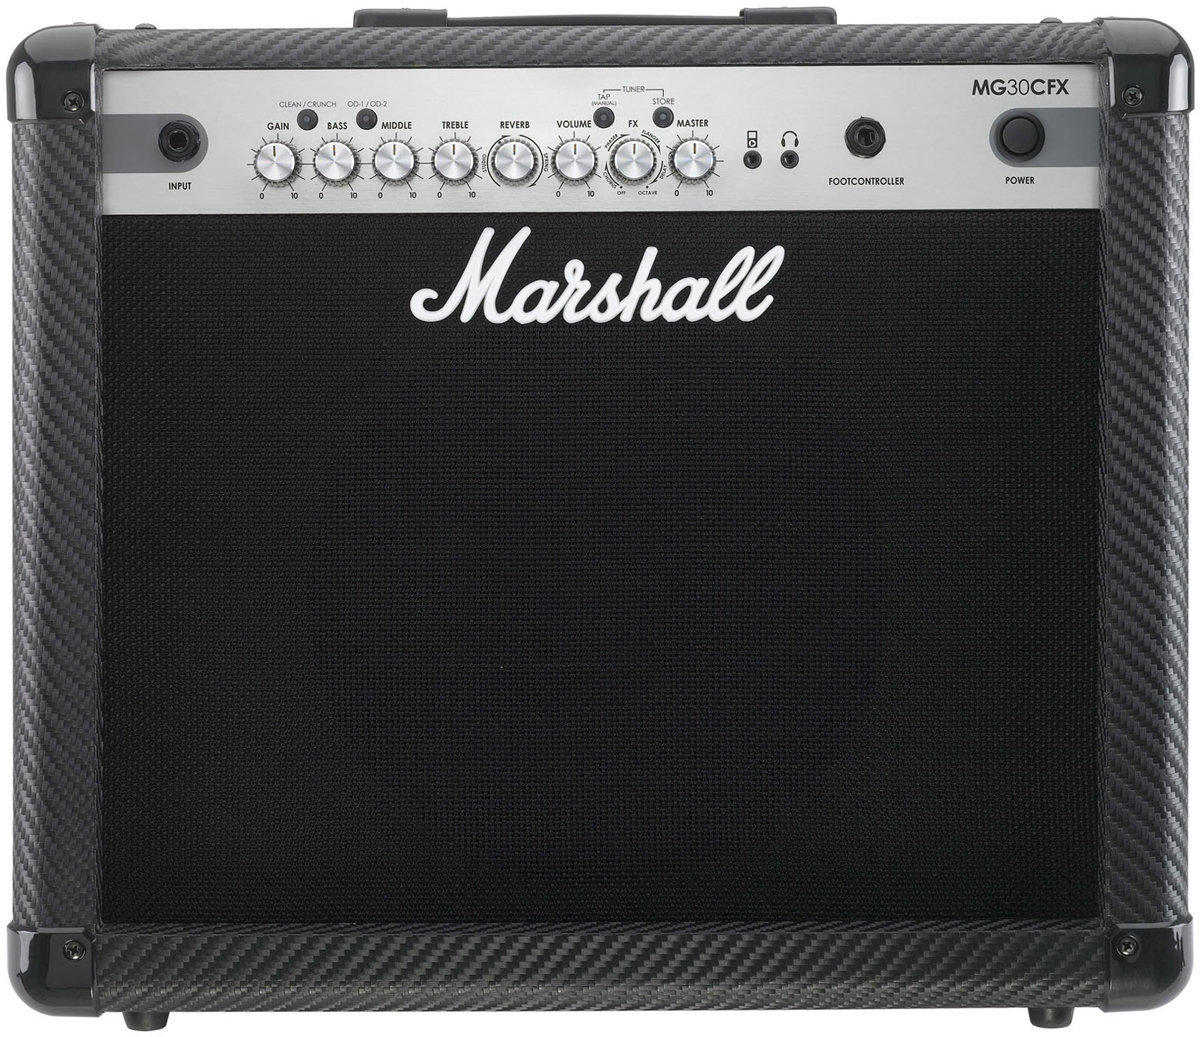 Gitarrencombo Marshall MG30CFX Carbon Fibre